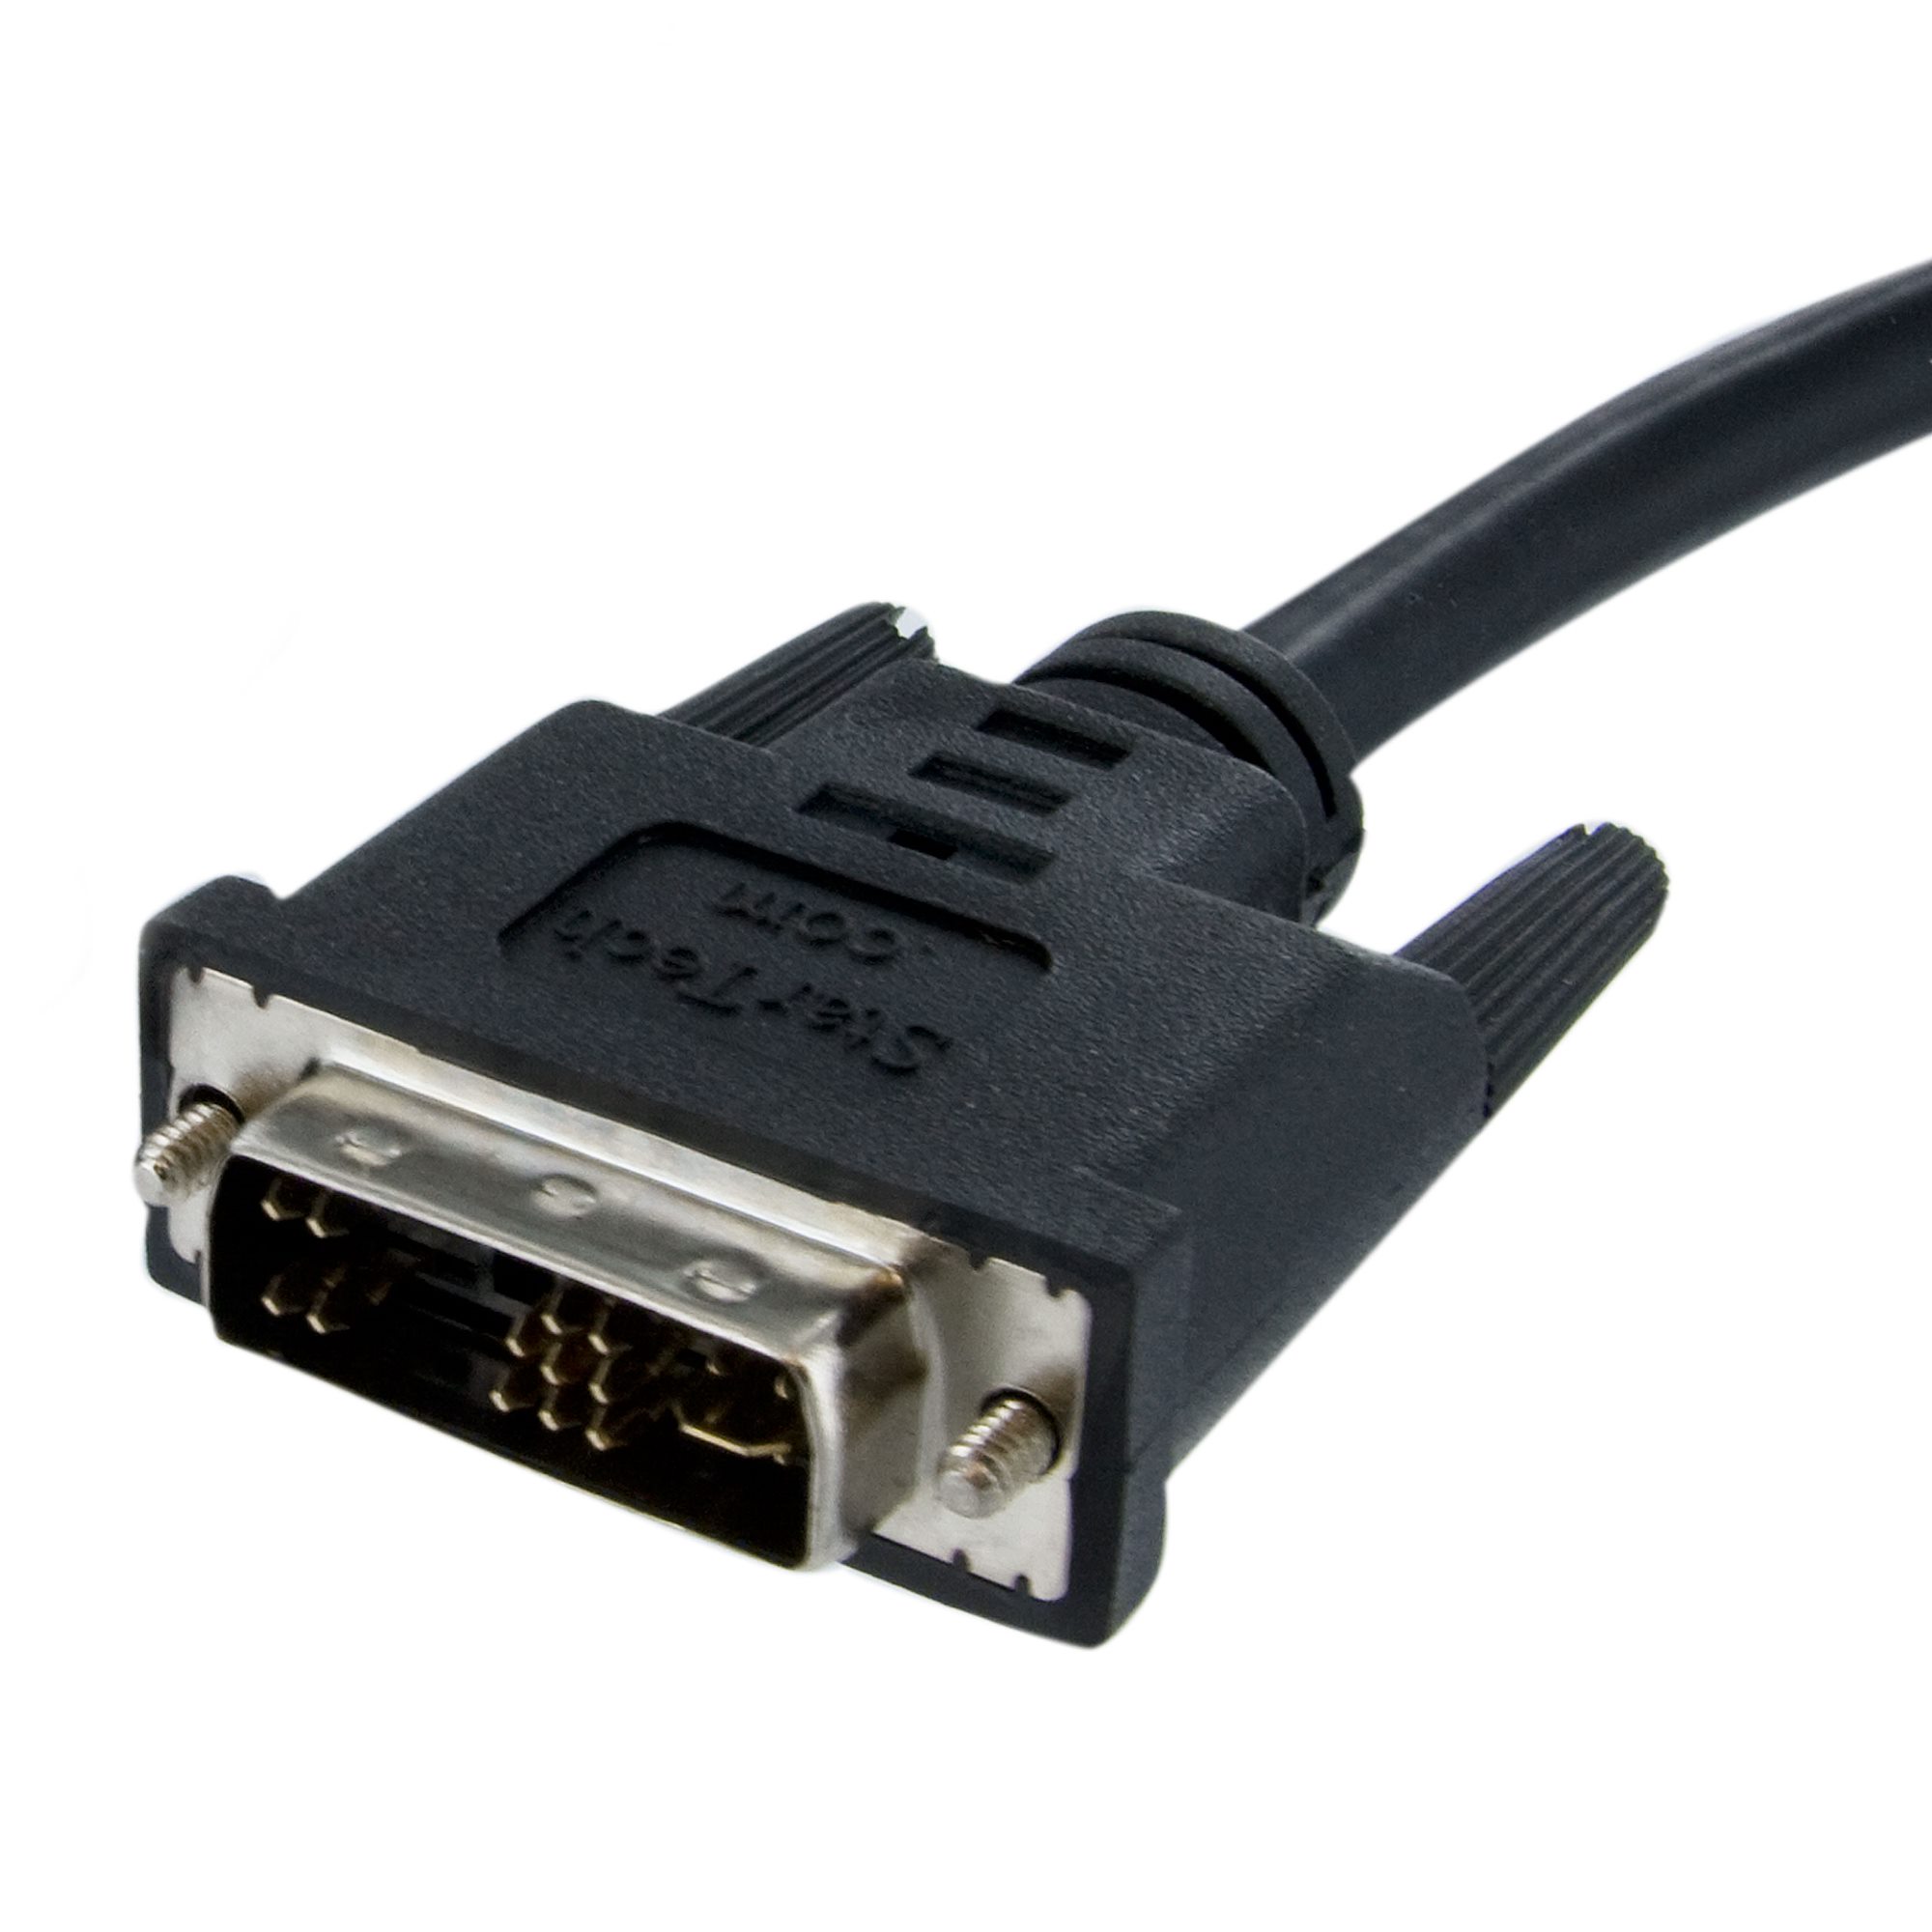 VGA maschio a maschio cavo 15 pin cavo monitor pc portatile wire 1 METRI 